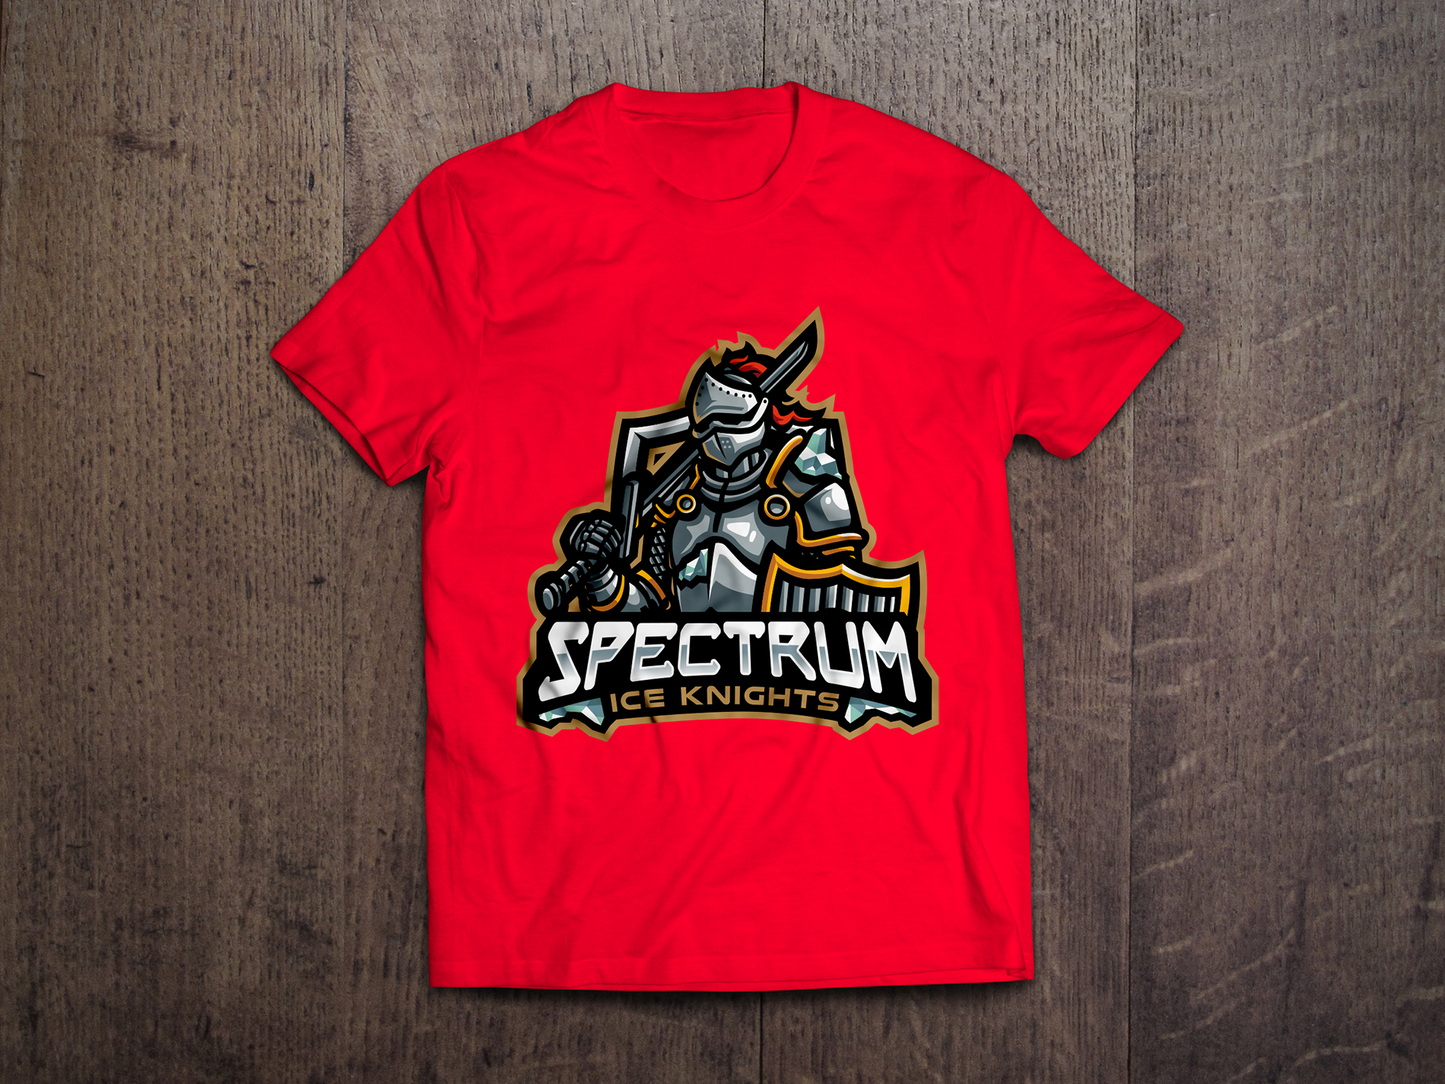 Spectrum Ice Knights Red Logo Tee - Redwolf Jersey Works